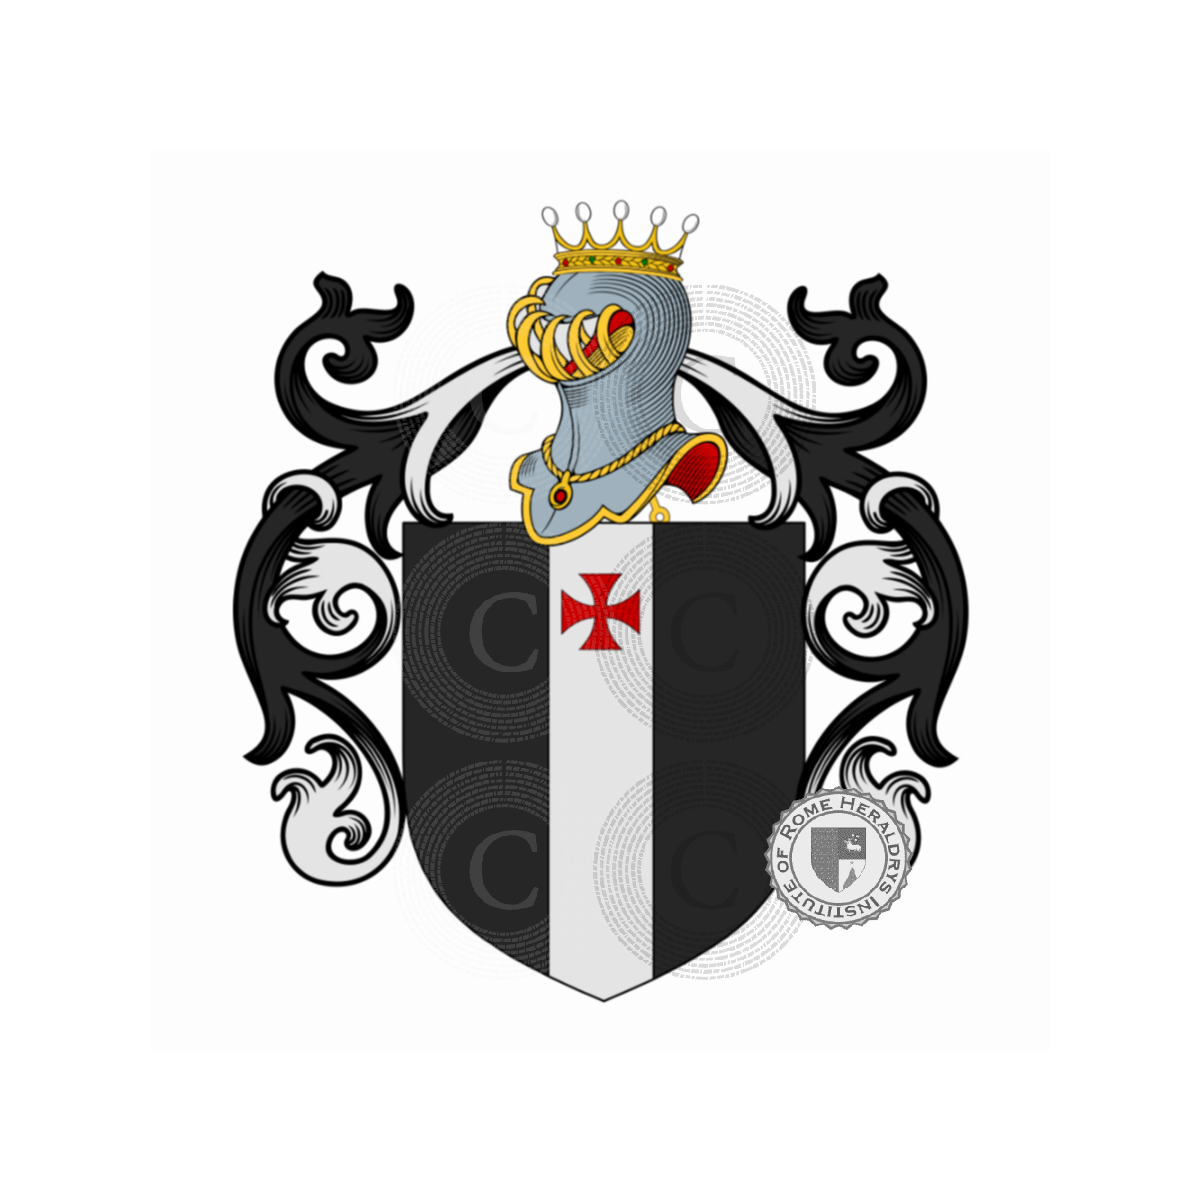 Wappen der FamilieFigiovanni, da Barberino,da Gagliano,Fiegiovanni